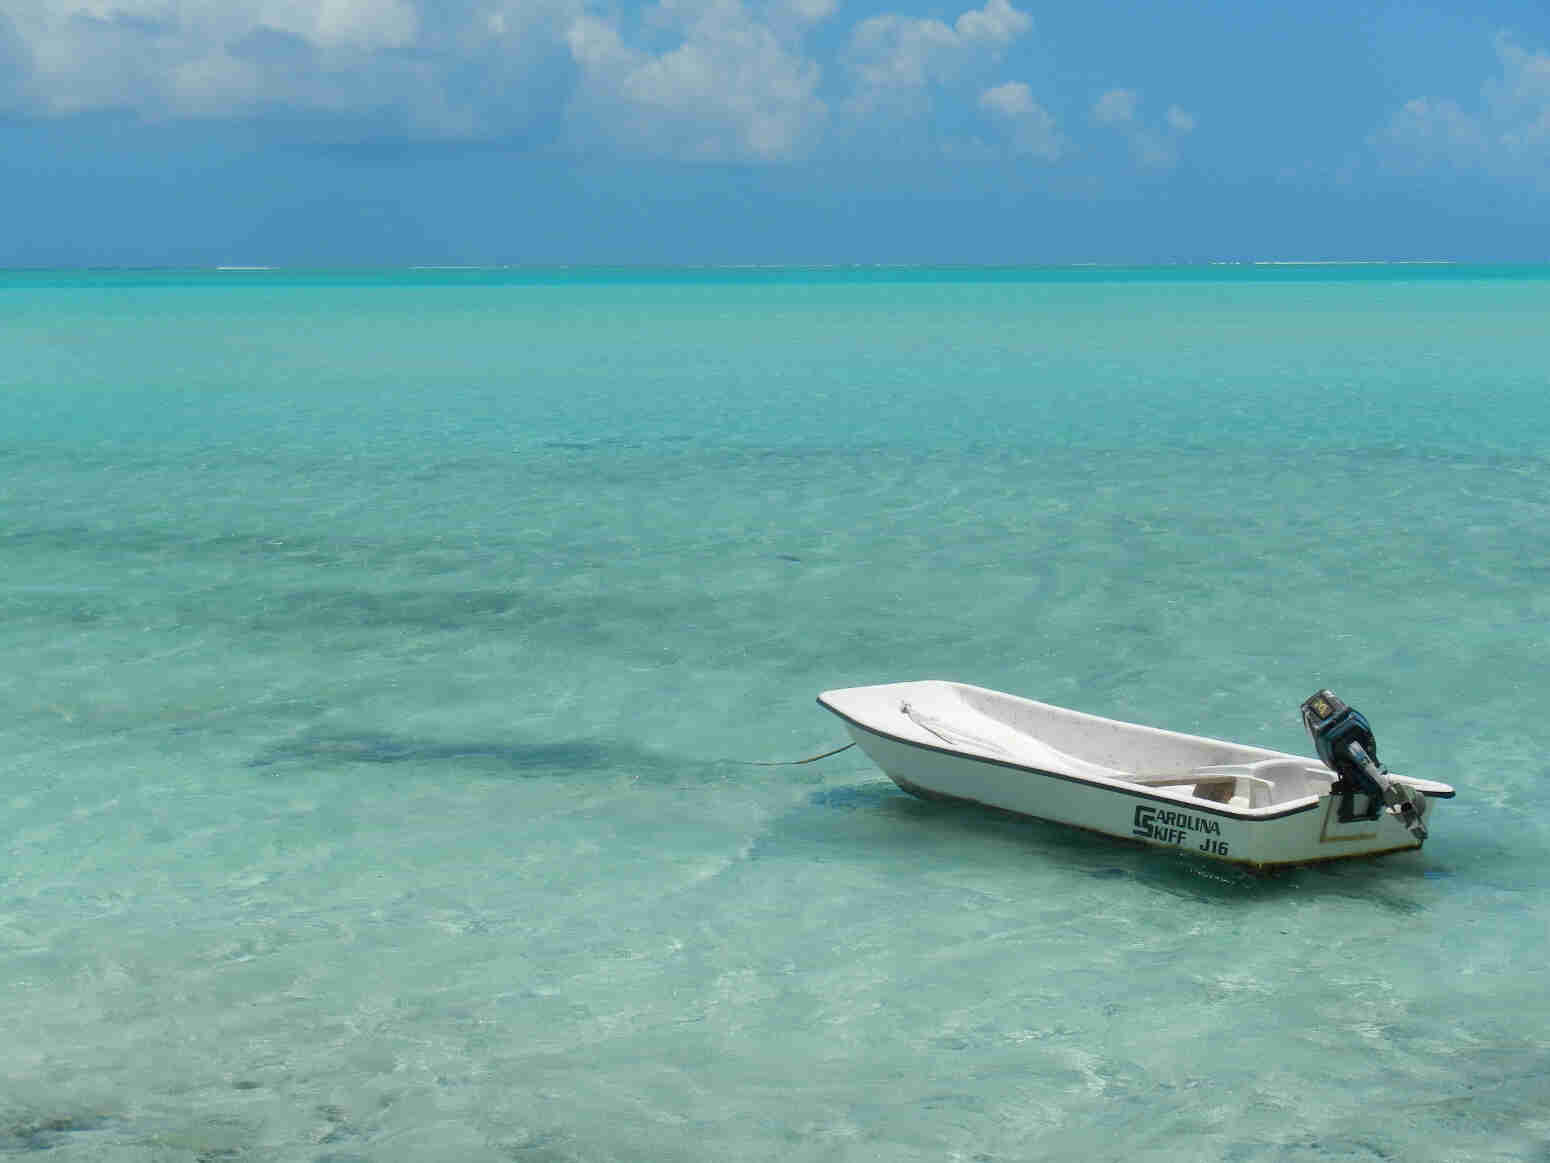 The waters of Bora Bora